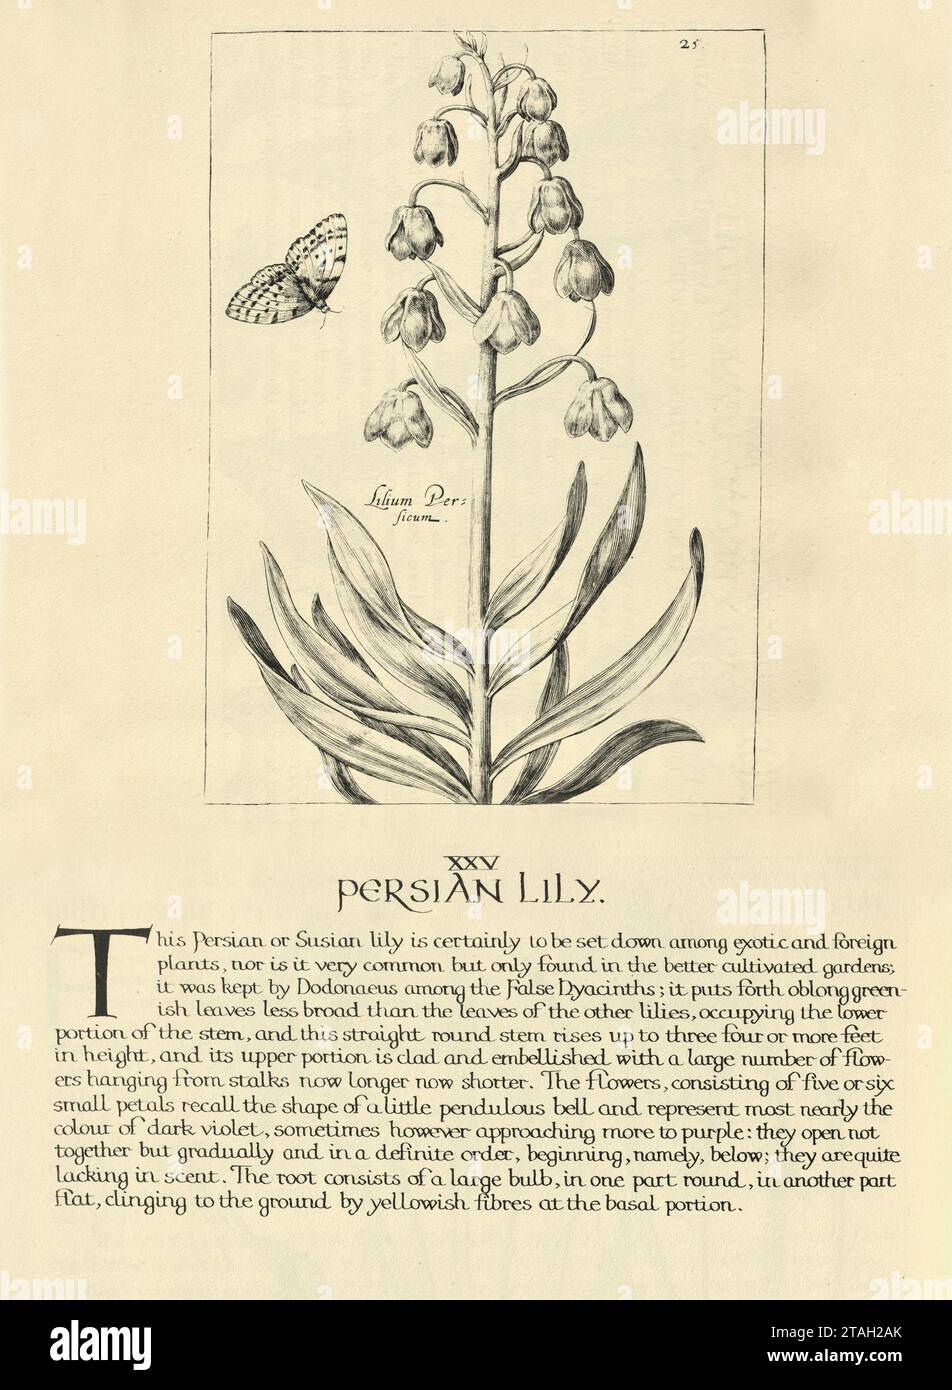 Estampe d'art botanique de lys perse, Fritillaria persica, plante à fleurs, de Hortus Floridus par Crispin de passe, illustration vintage, 17e Centur Banque D'Images